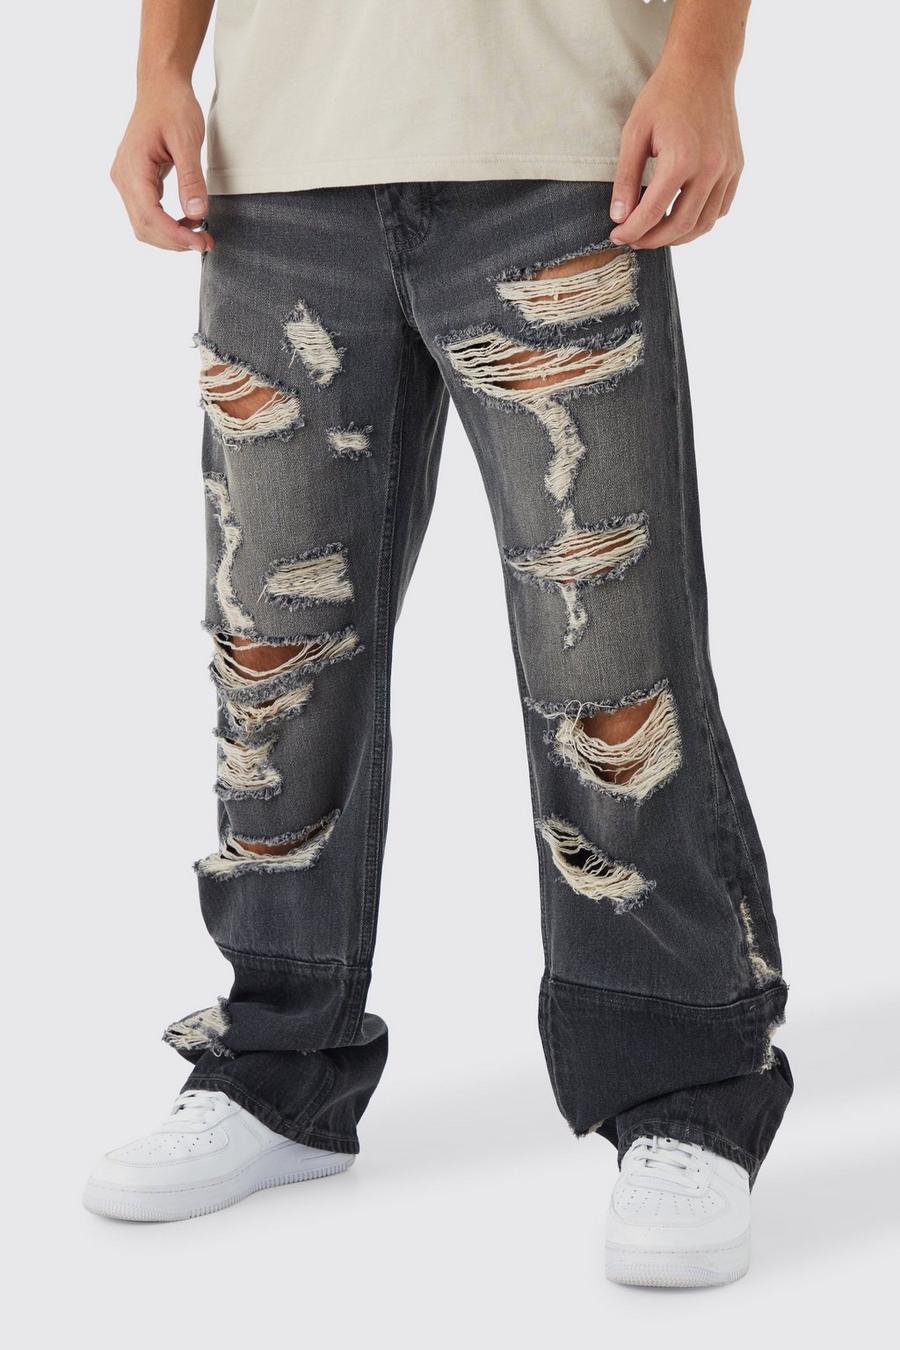 szare spodnie ripped jeans guziki kieszenie